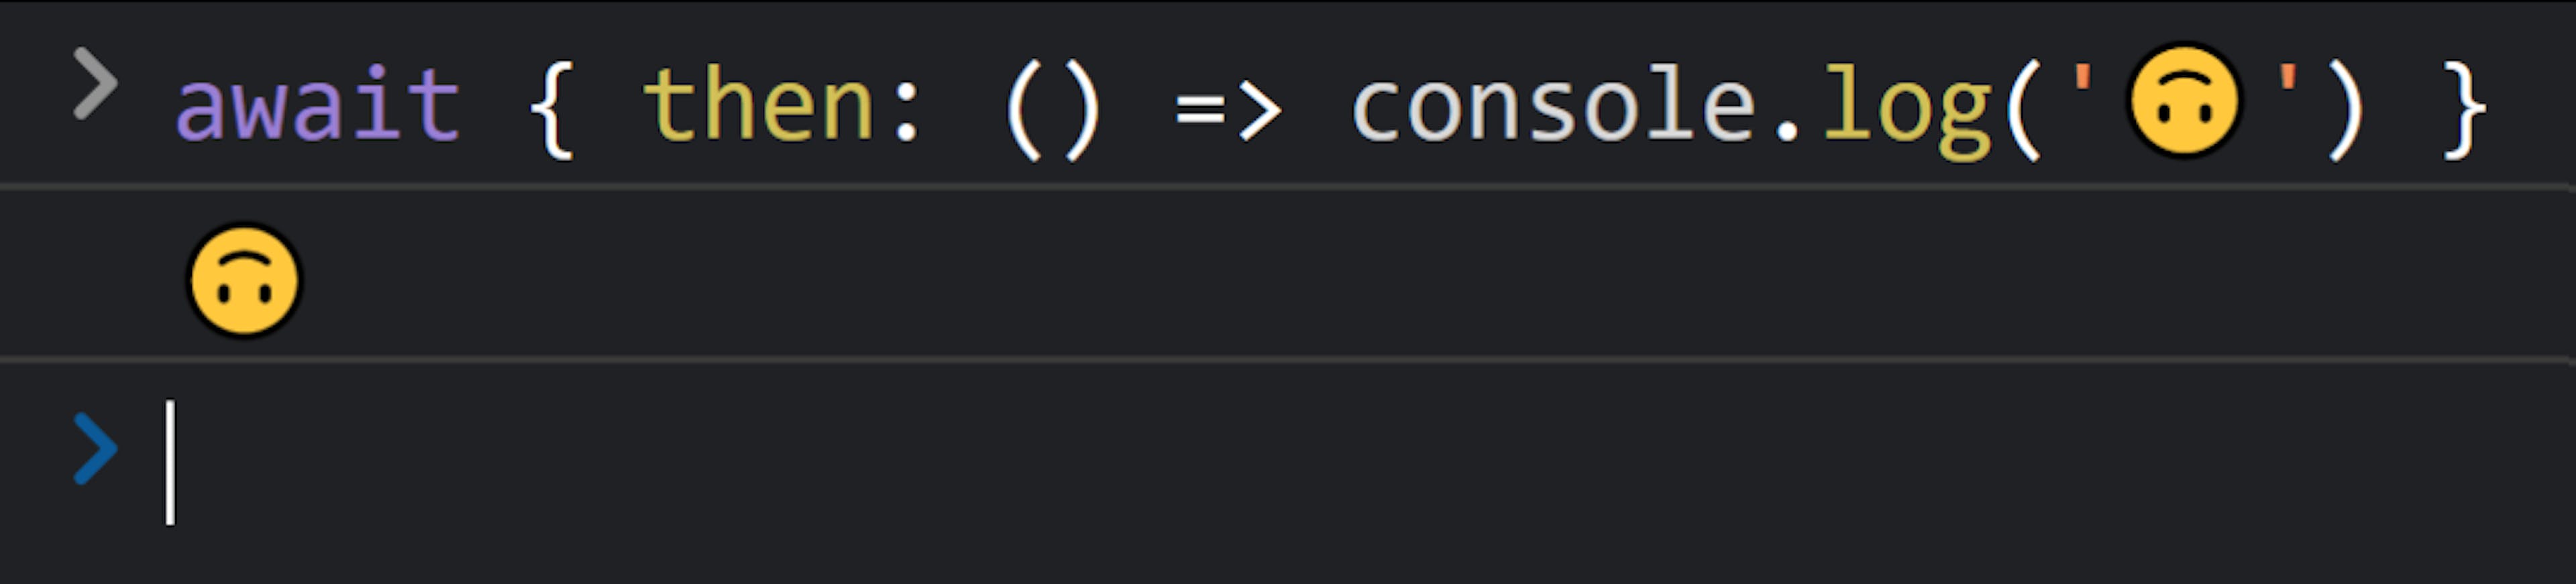 Bảng điều khiển JavaScript có nội dung "await { then: () => console.log('🙃') }" theo sau là "🙃".